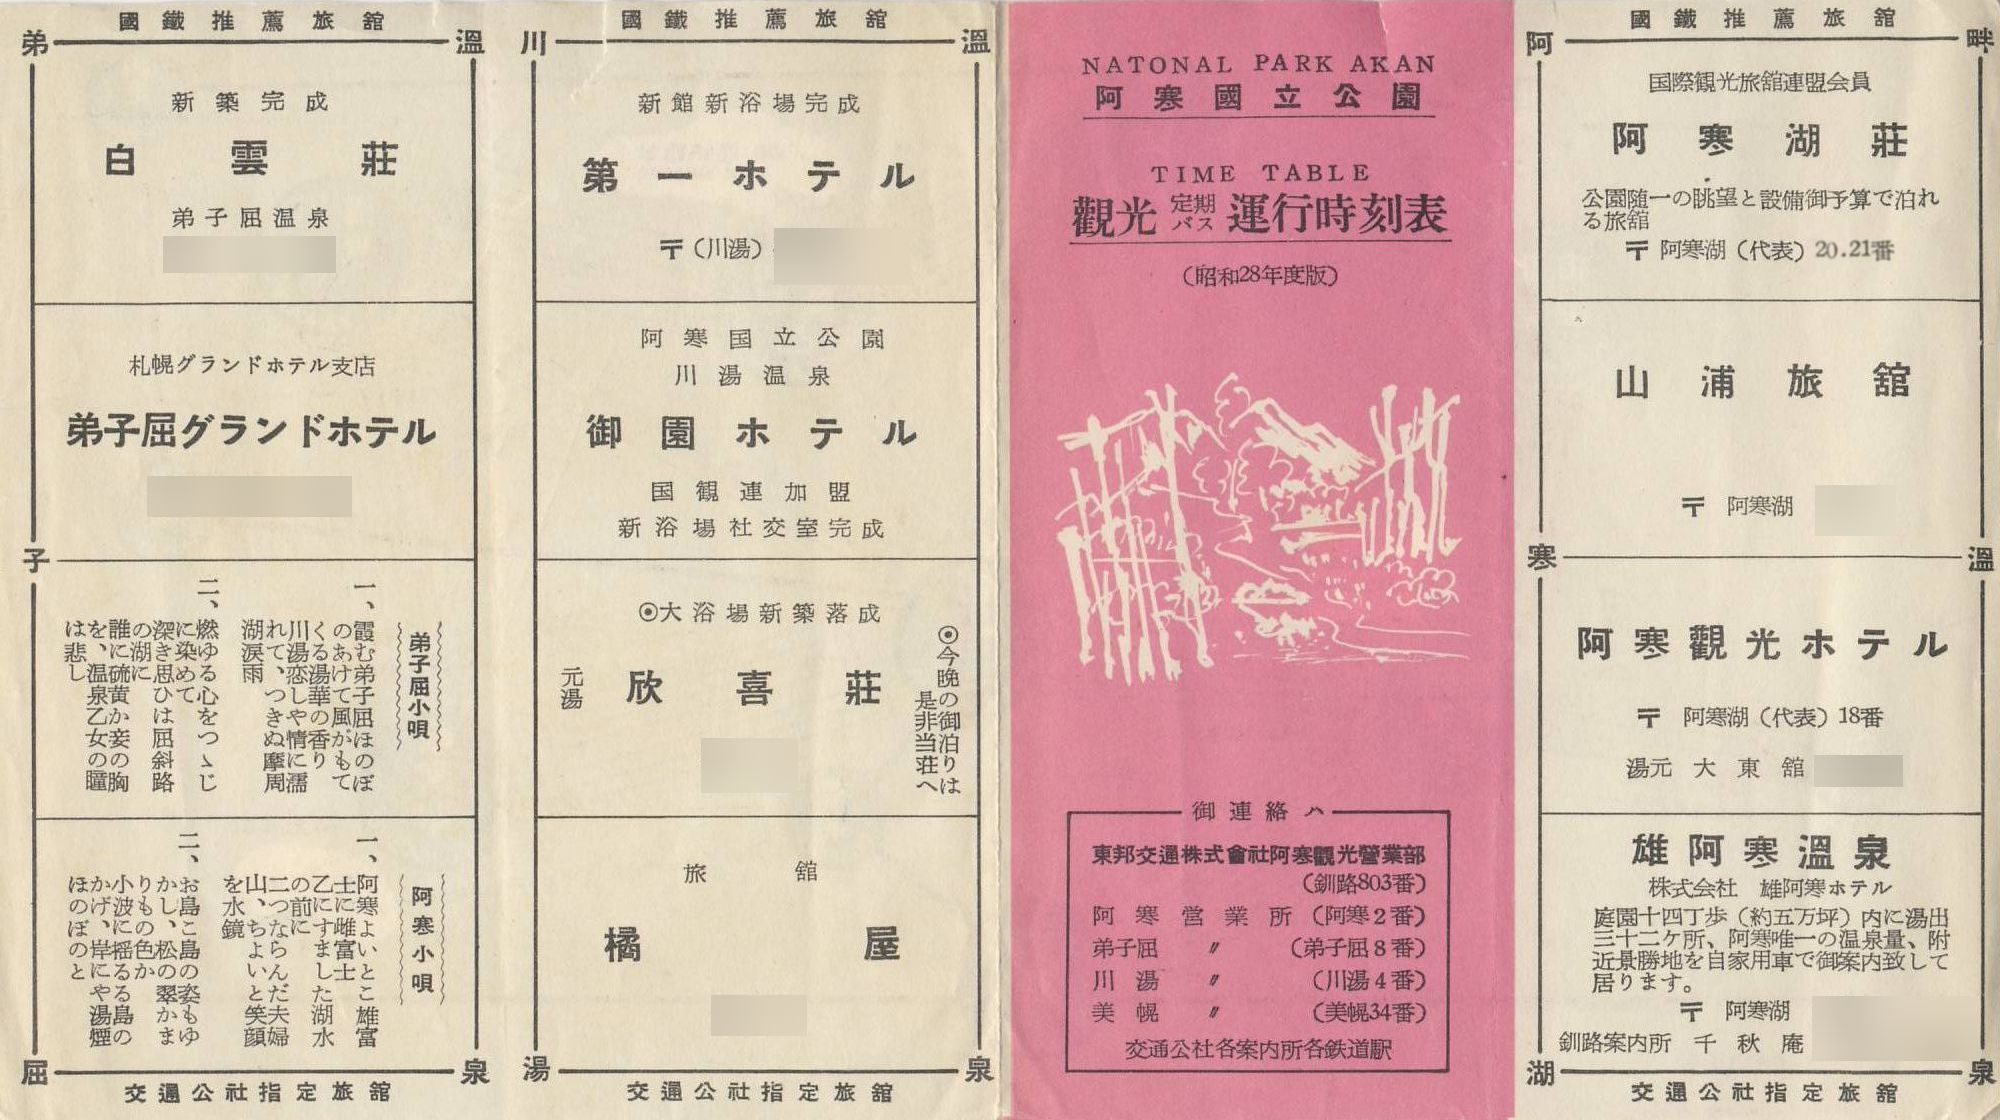 1953年度版_東邦交通_観光定期バス時刻表表面